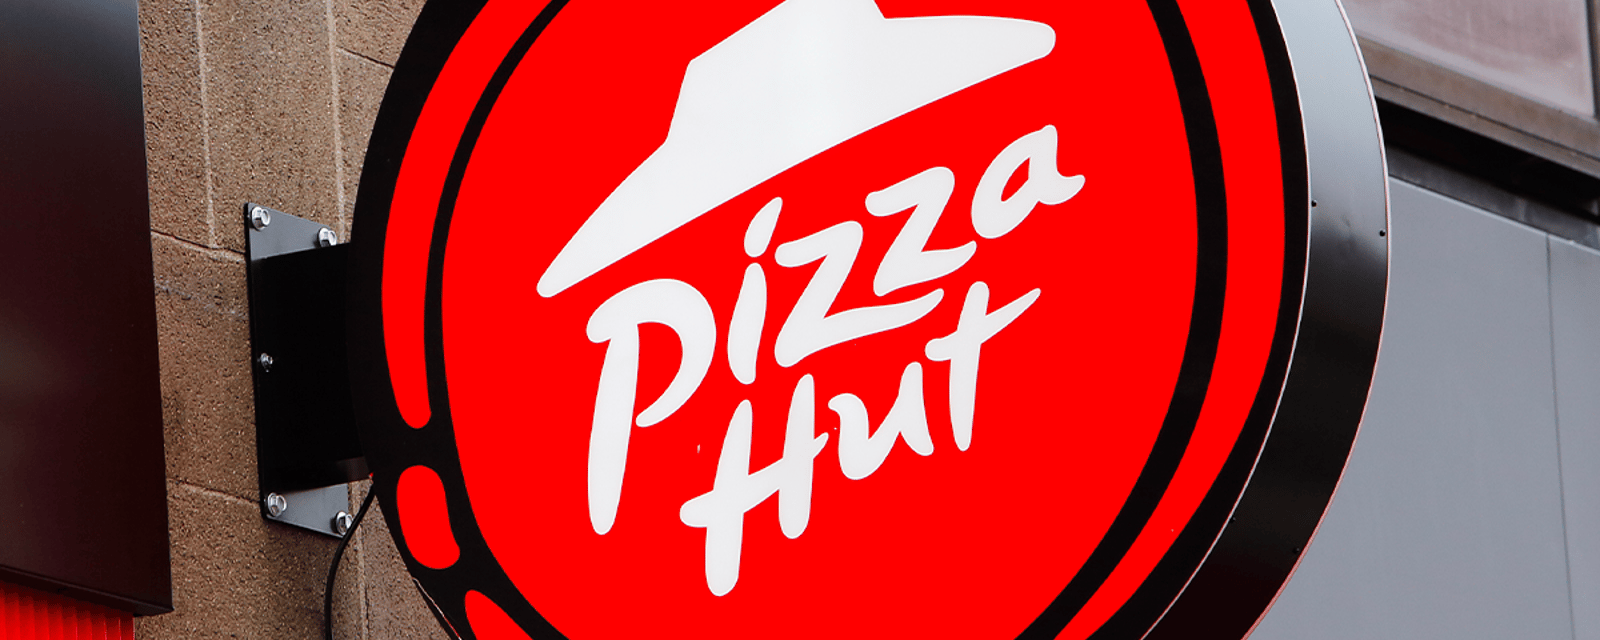 Pizza Hut offre de la pizza gratuite aujourd'hui et voici ce que vous devez savoir